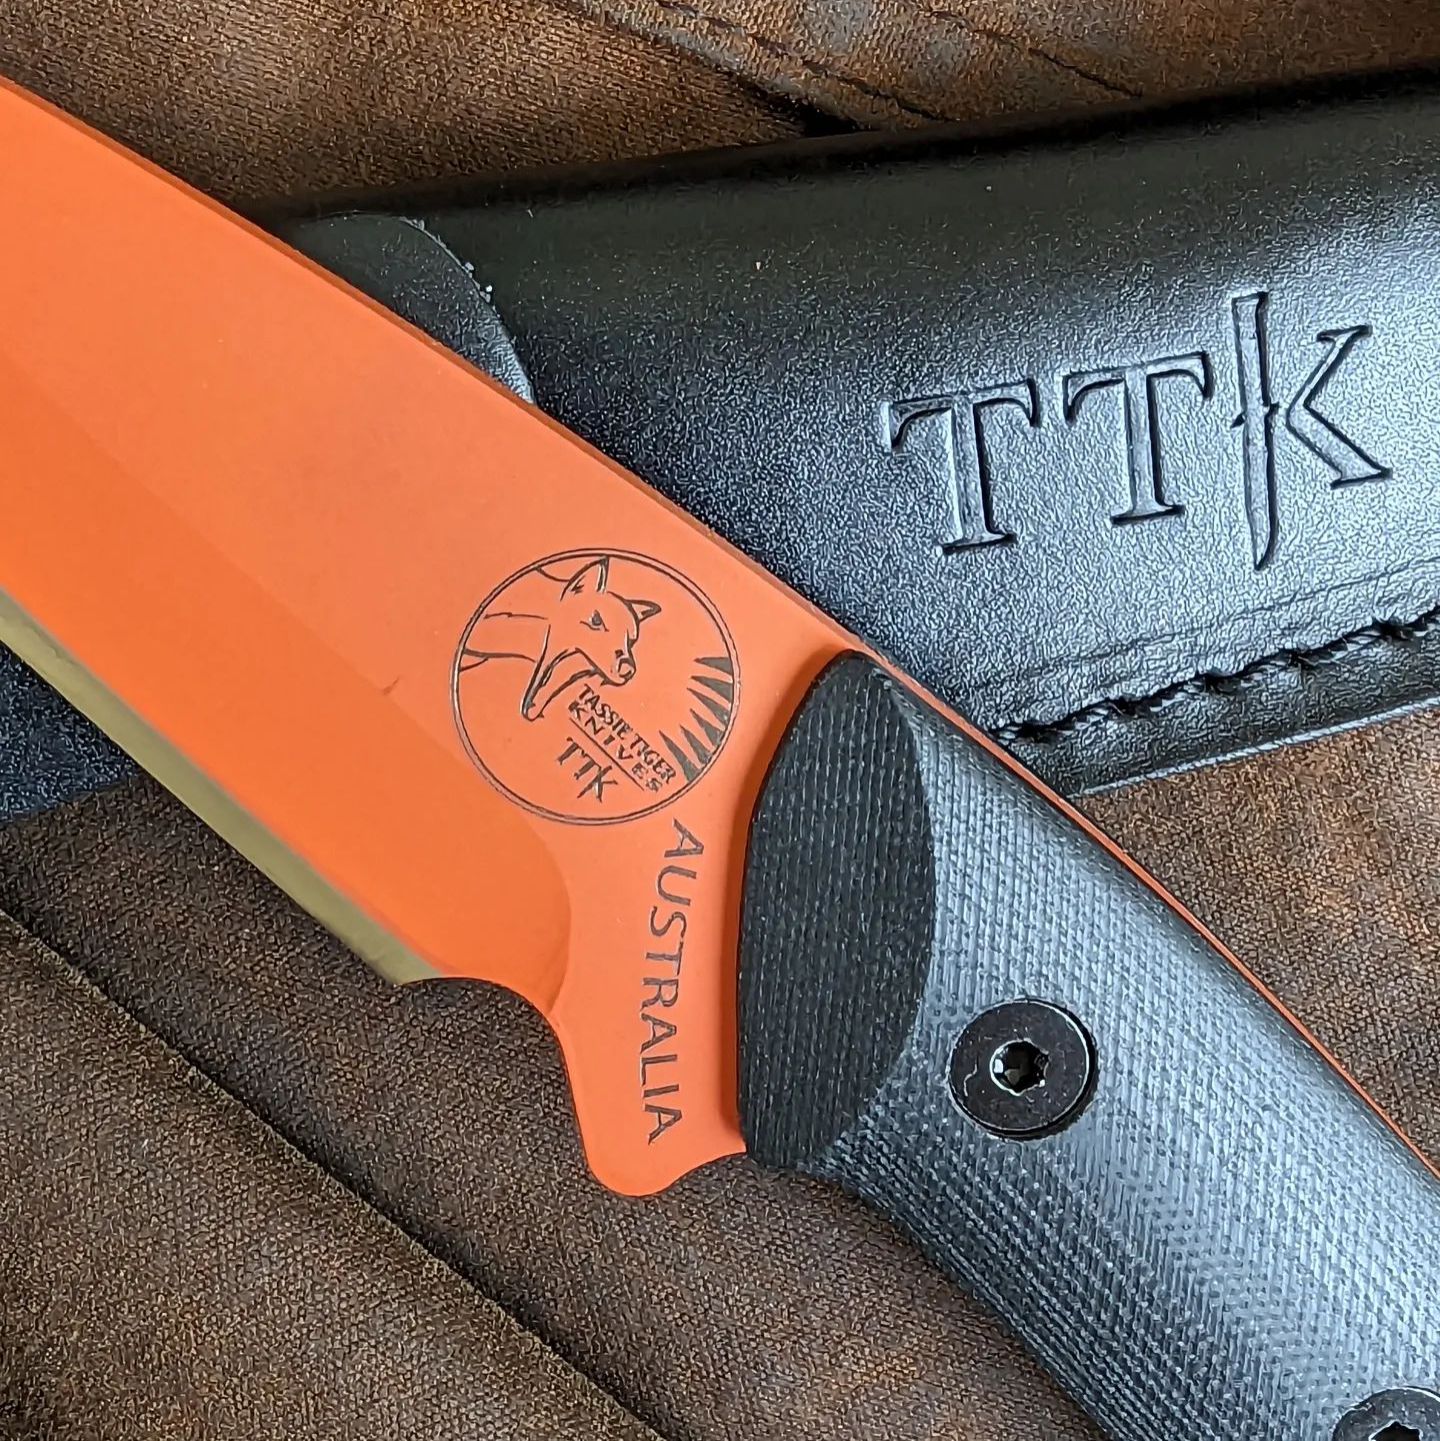 Fixed Blade Knife - Orange Cerakote with Black G10 Handle